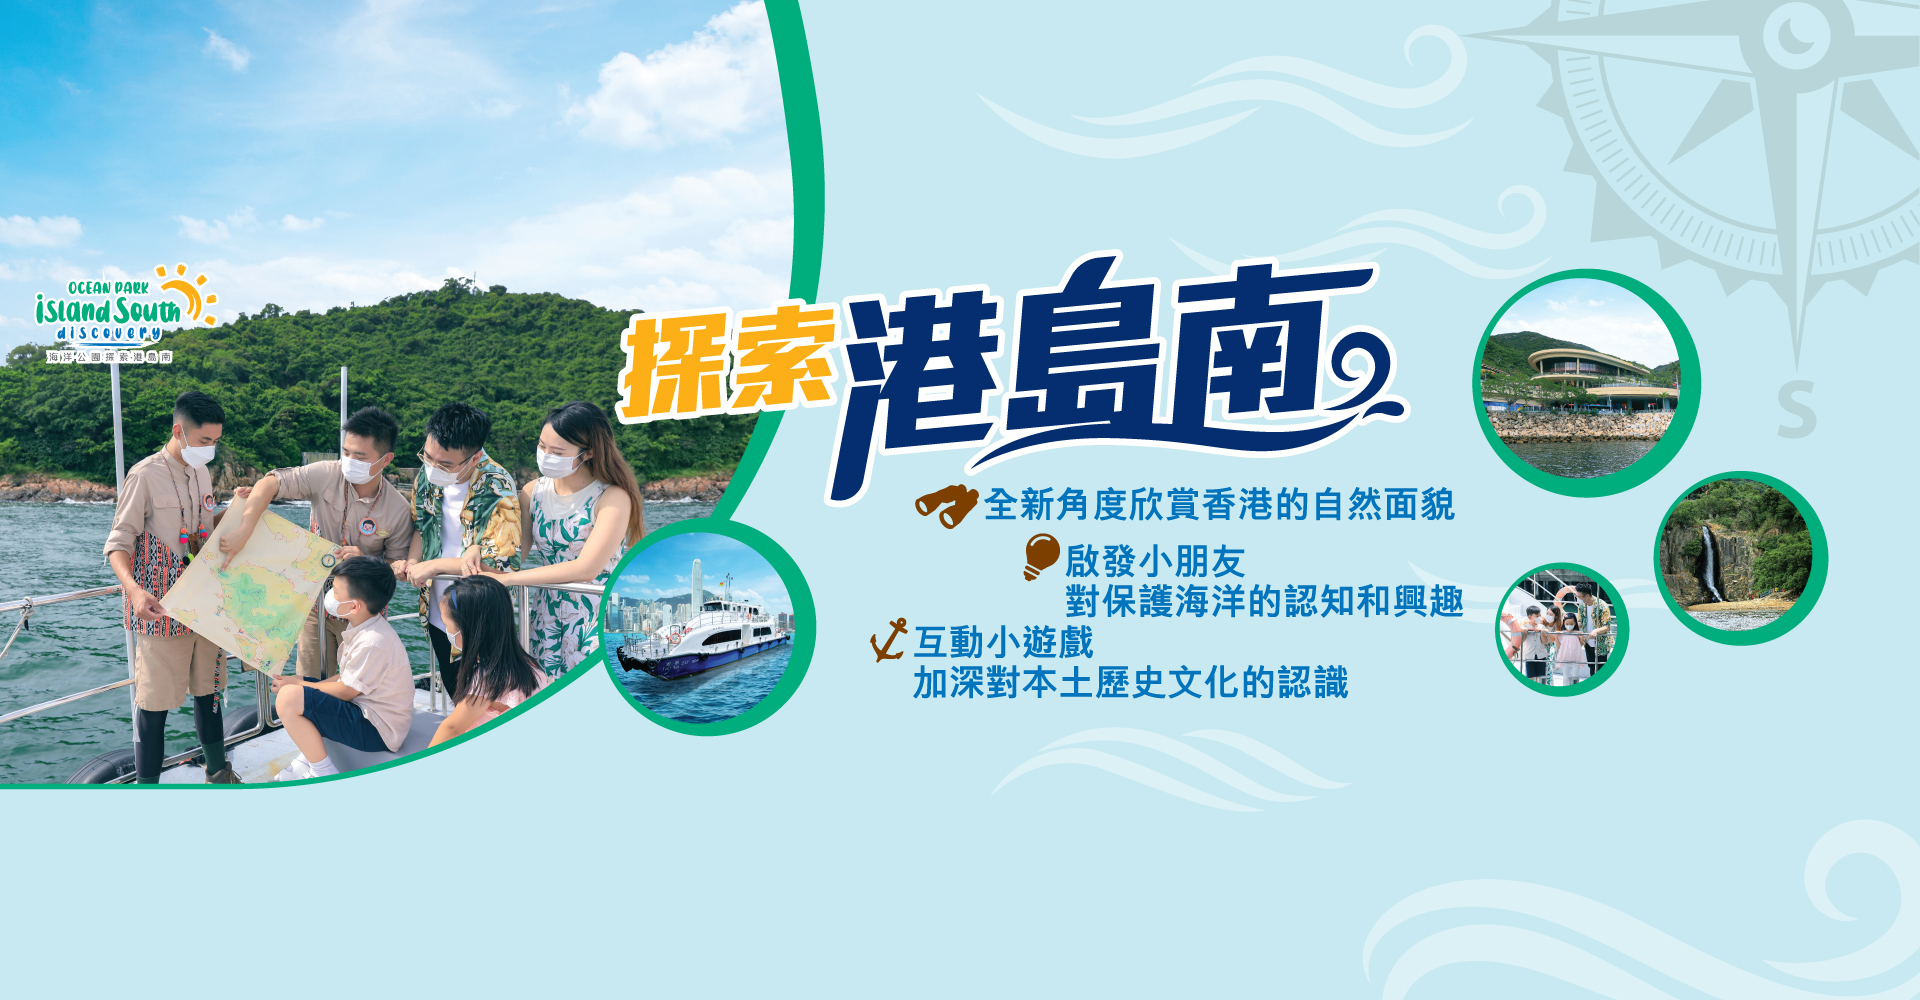 https://media.oceanpark.com.hk/files/s3fs-public/little-voyager-innerpage-desktop-banner-tc_2.jpg